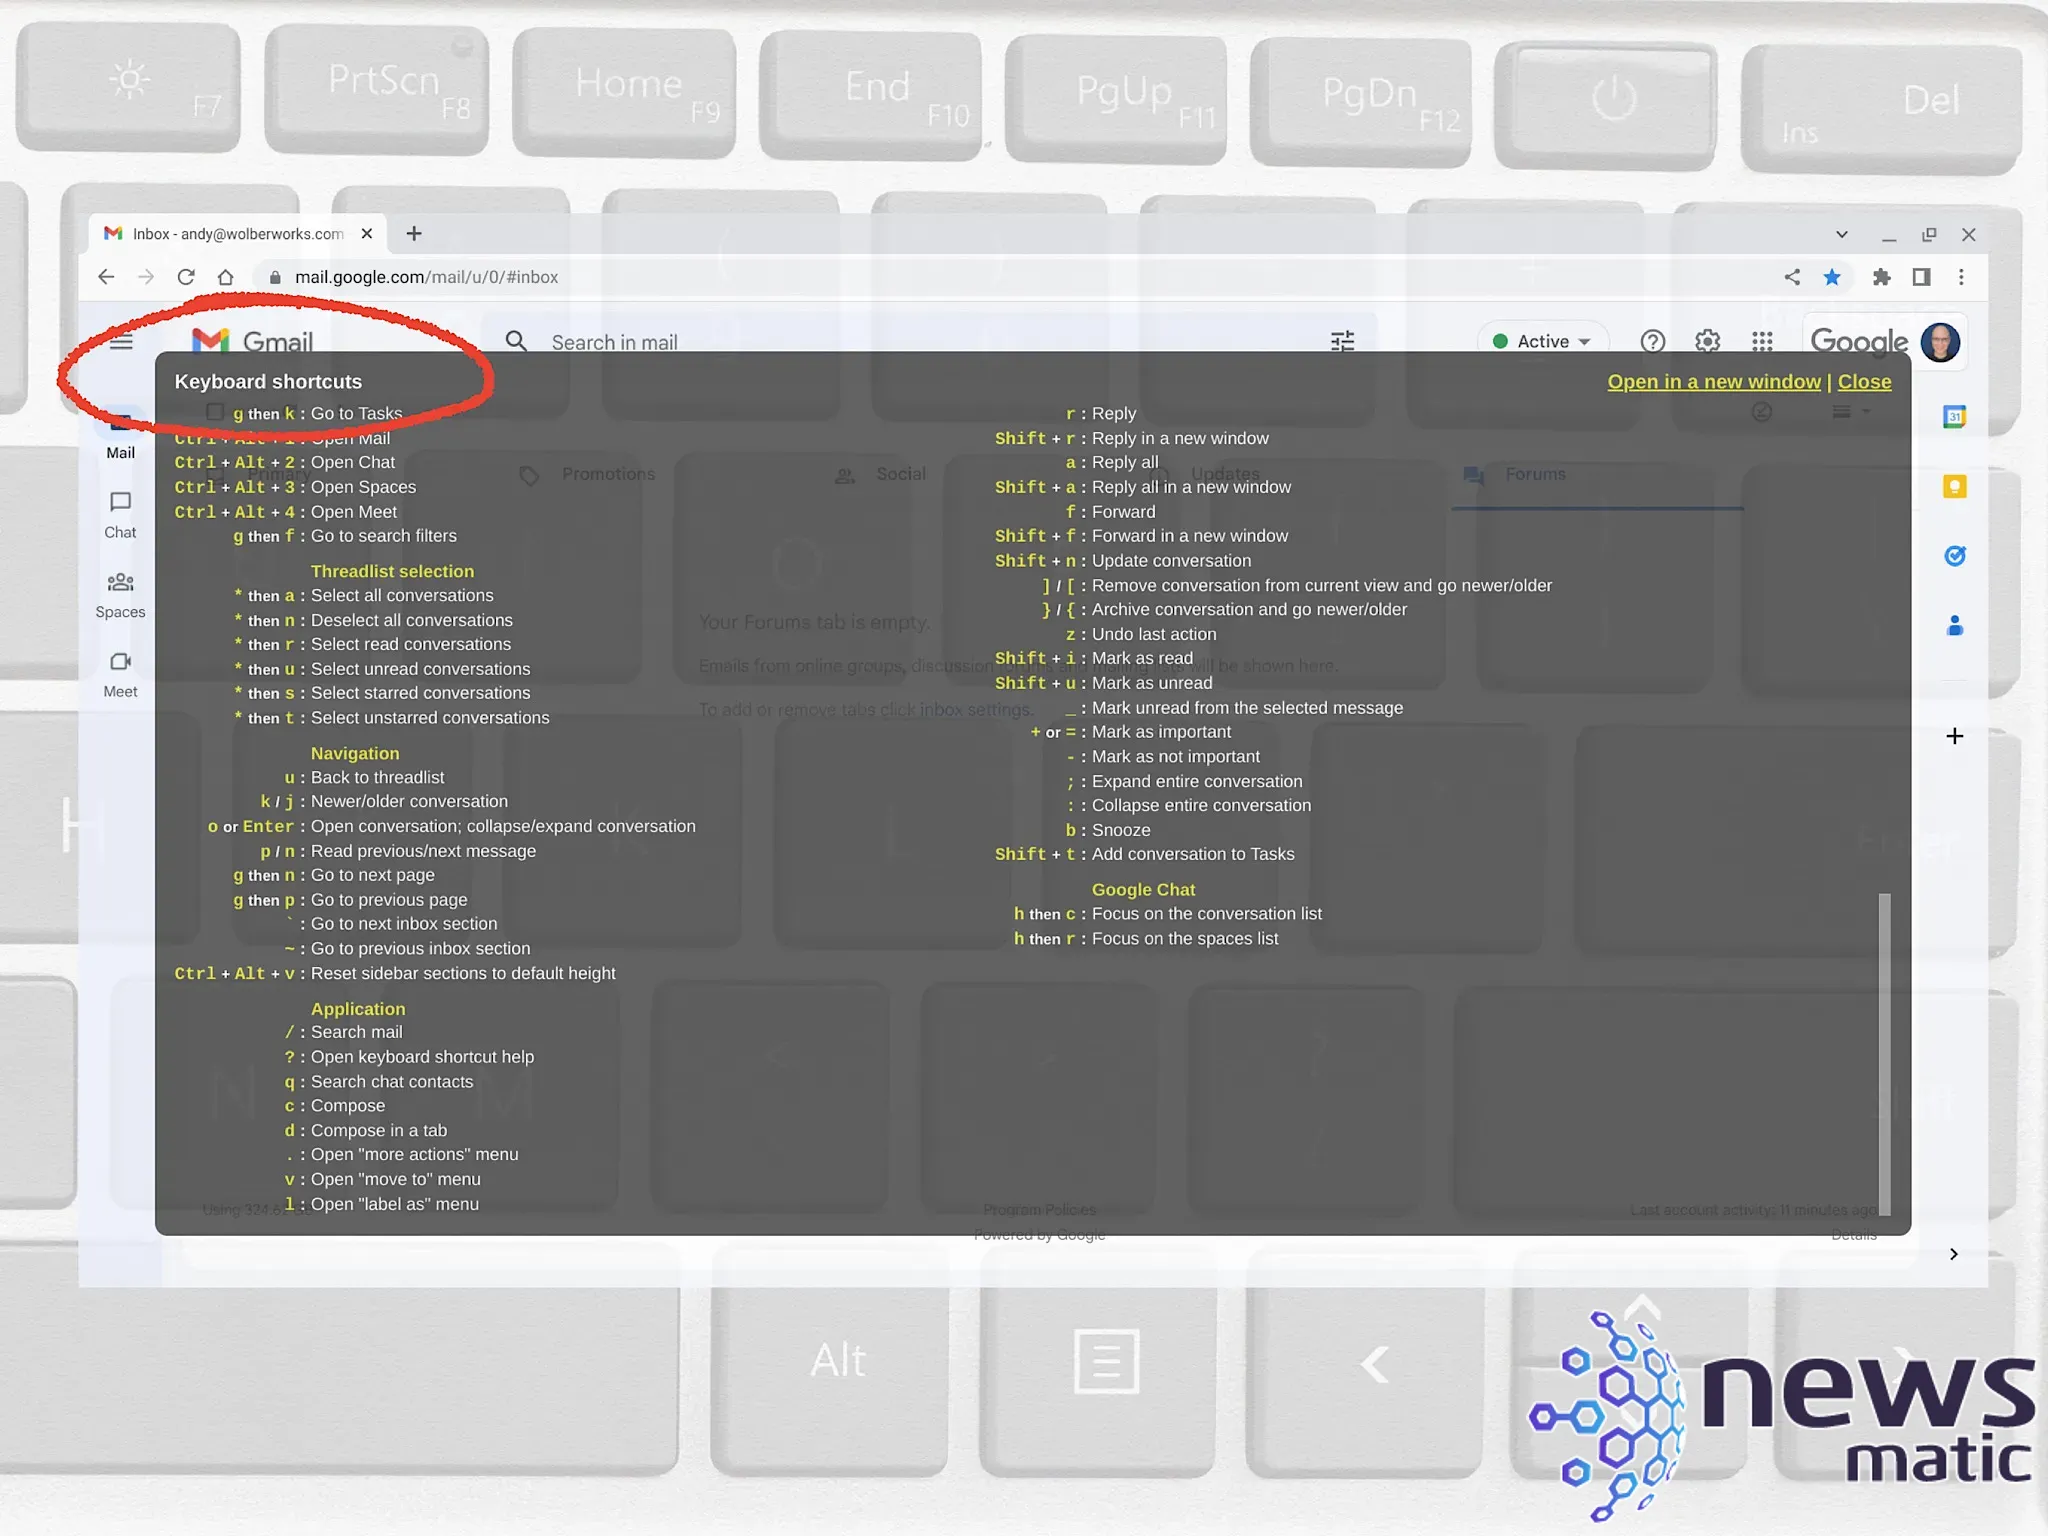 Descubre cómo utilizar los atajos de teclado en Gmail para una navegación más rápida y eficiente - Software | Imagen 1 Newsmatic